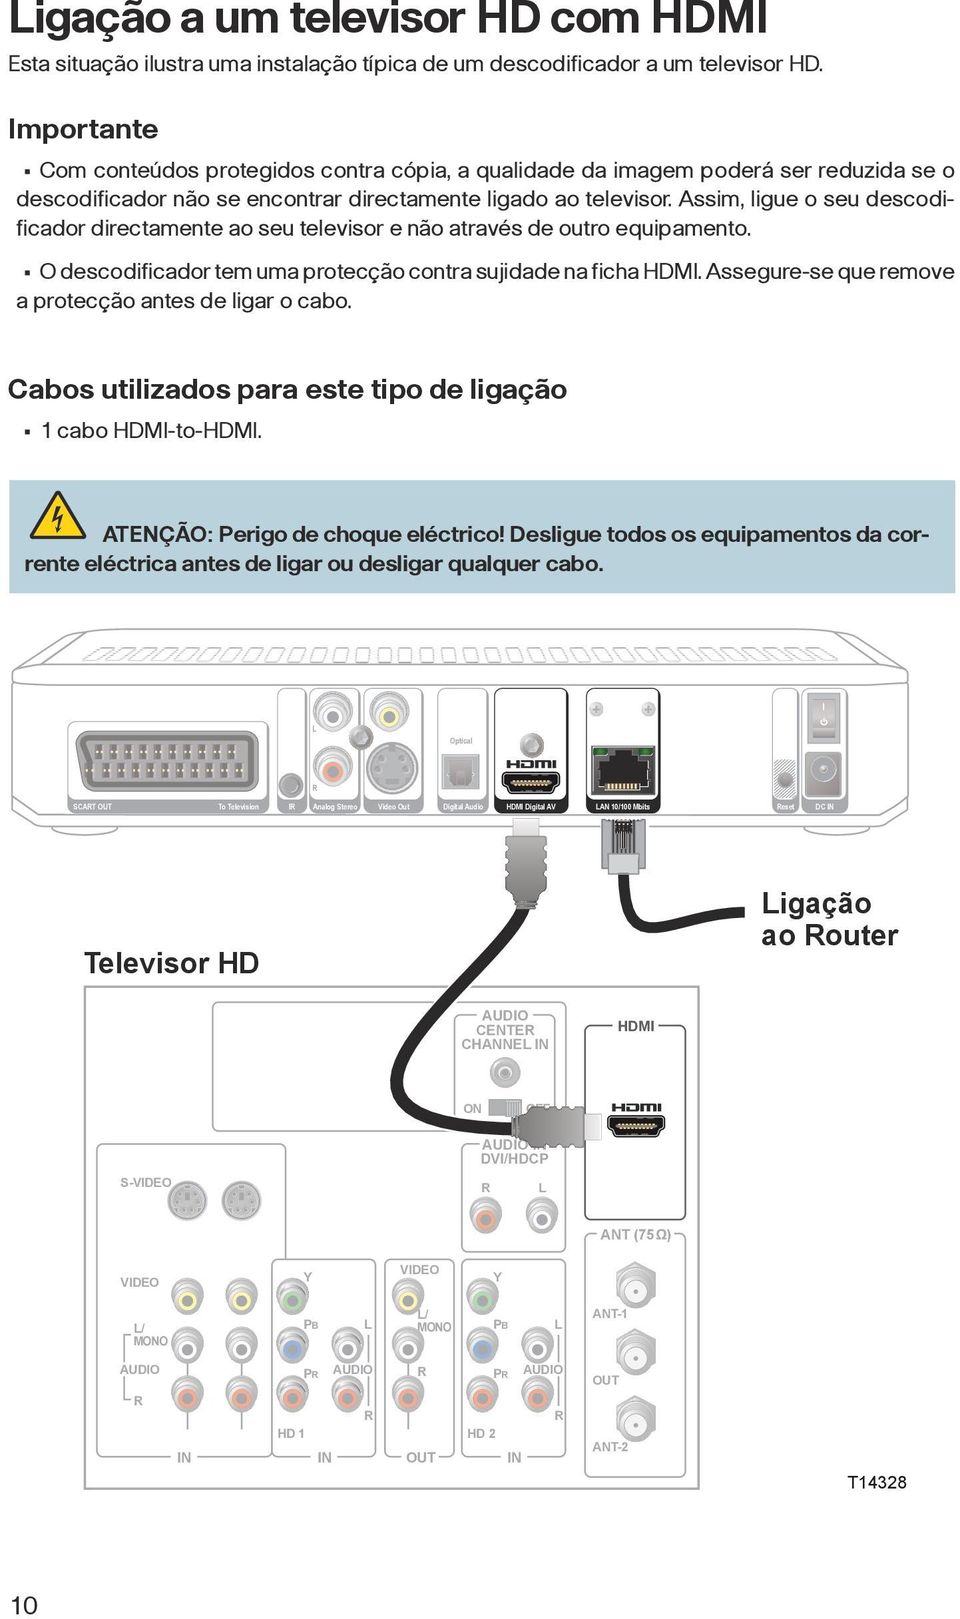 Assim, ligue o seu descodificador directamente ao seu televisor e não através de outro equipamento. O descodificador tem uma protecção contra sujidade na ficha HDMI.